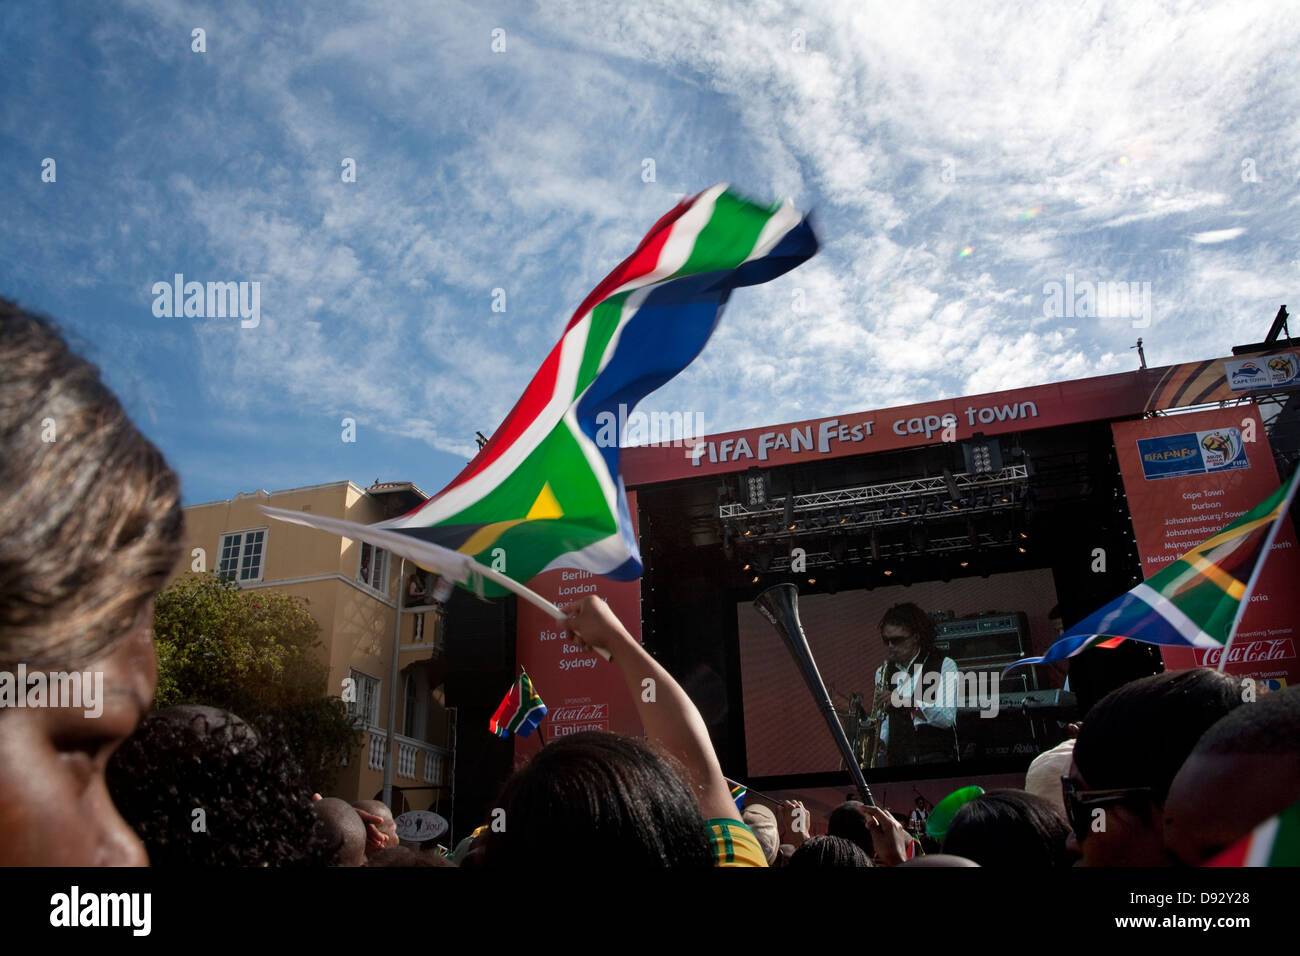 Les vagues de fan de football drapeau sud-africain au cours des concerts live dans le cadre de la coupe du monde FIFA tirage final, festivités sur la rue Longue au Cap Banque D'Images